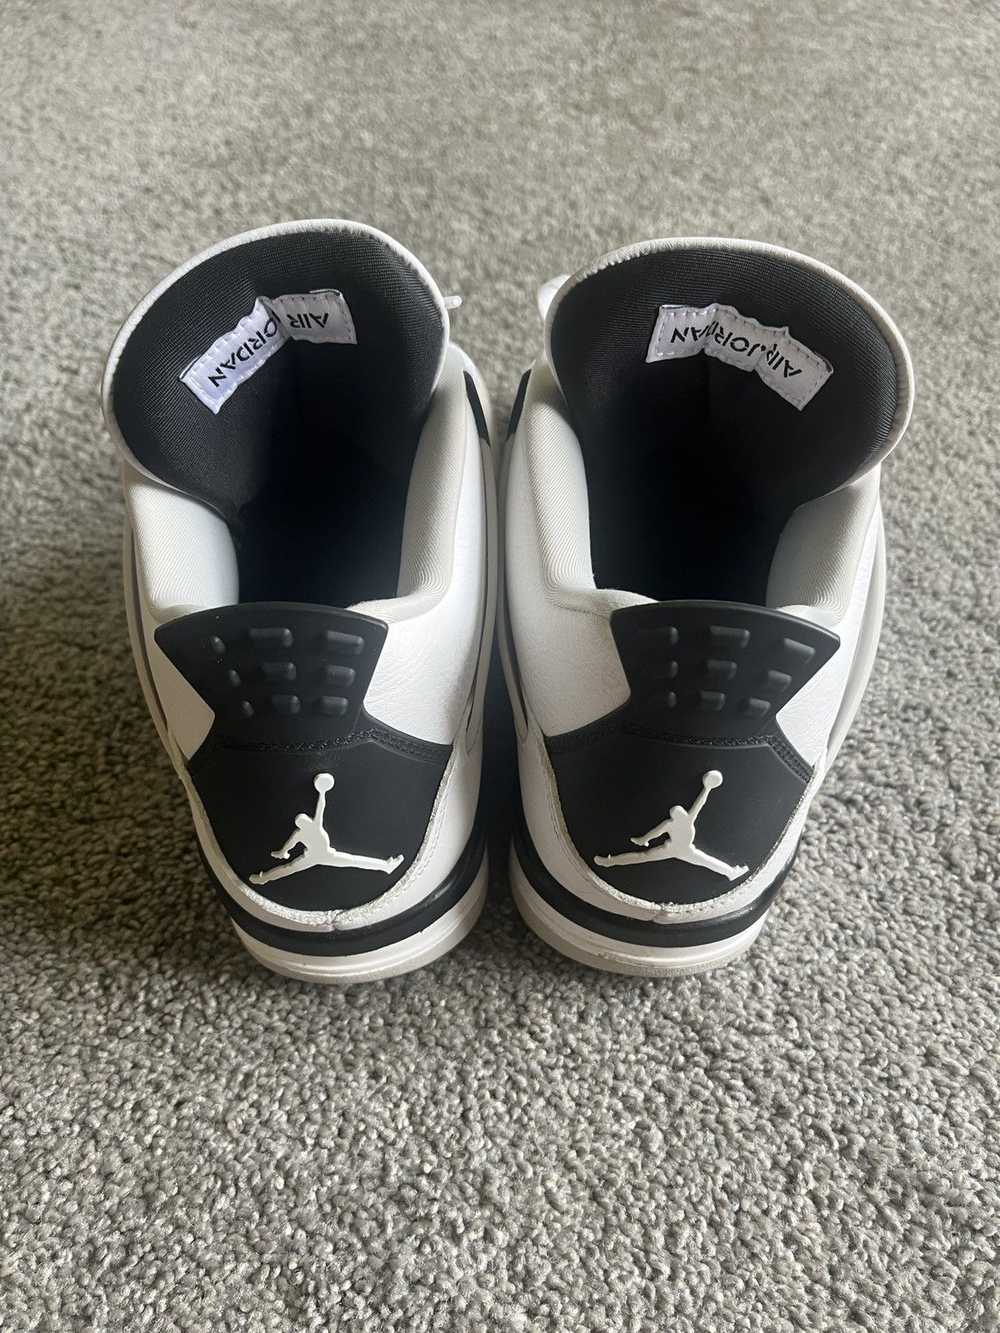 Jordan Brand × Nike Air Jordan 4 “Military Black” - image 4